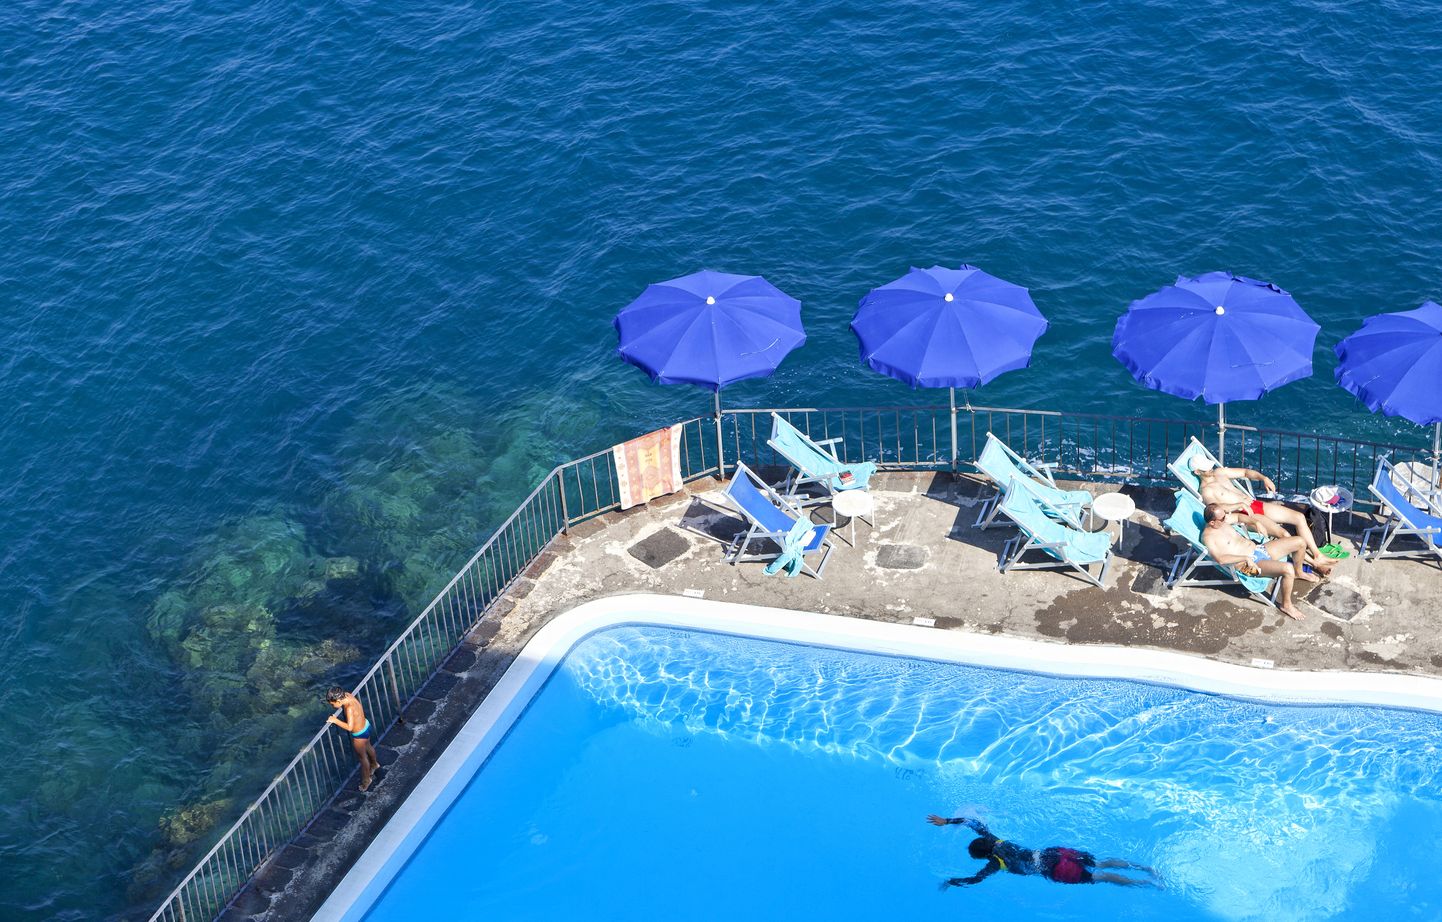 Mereäärne ujumisbassein Campania maakonnas Itaalias. Pilt on illustratiivne.